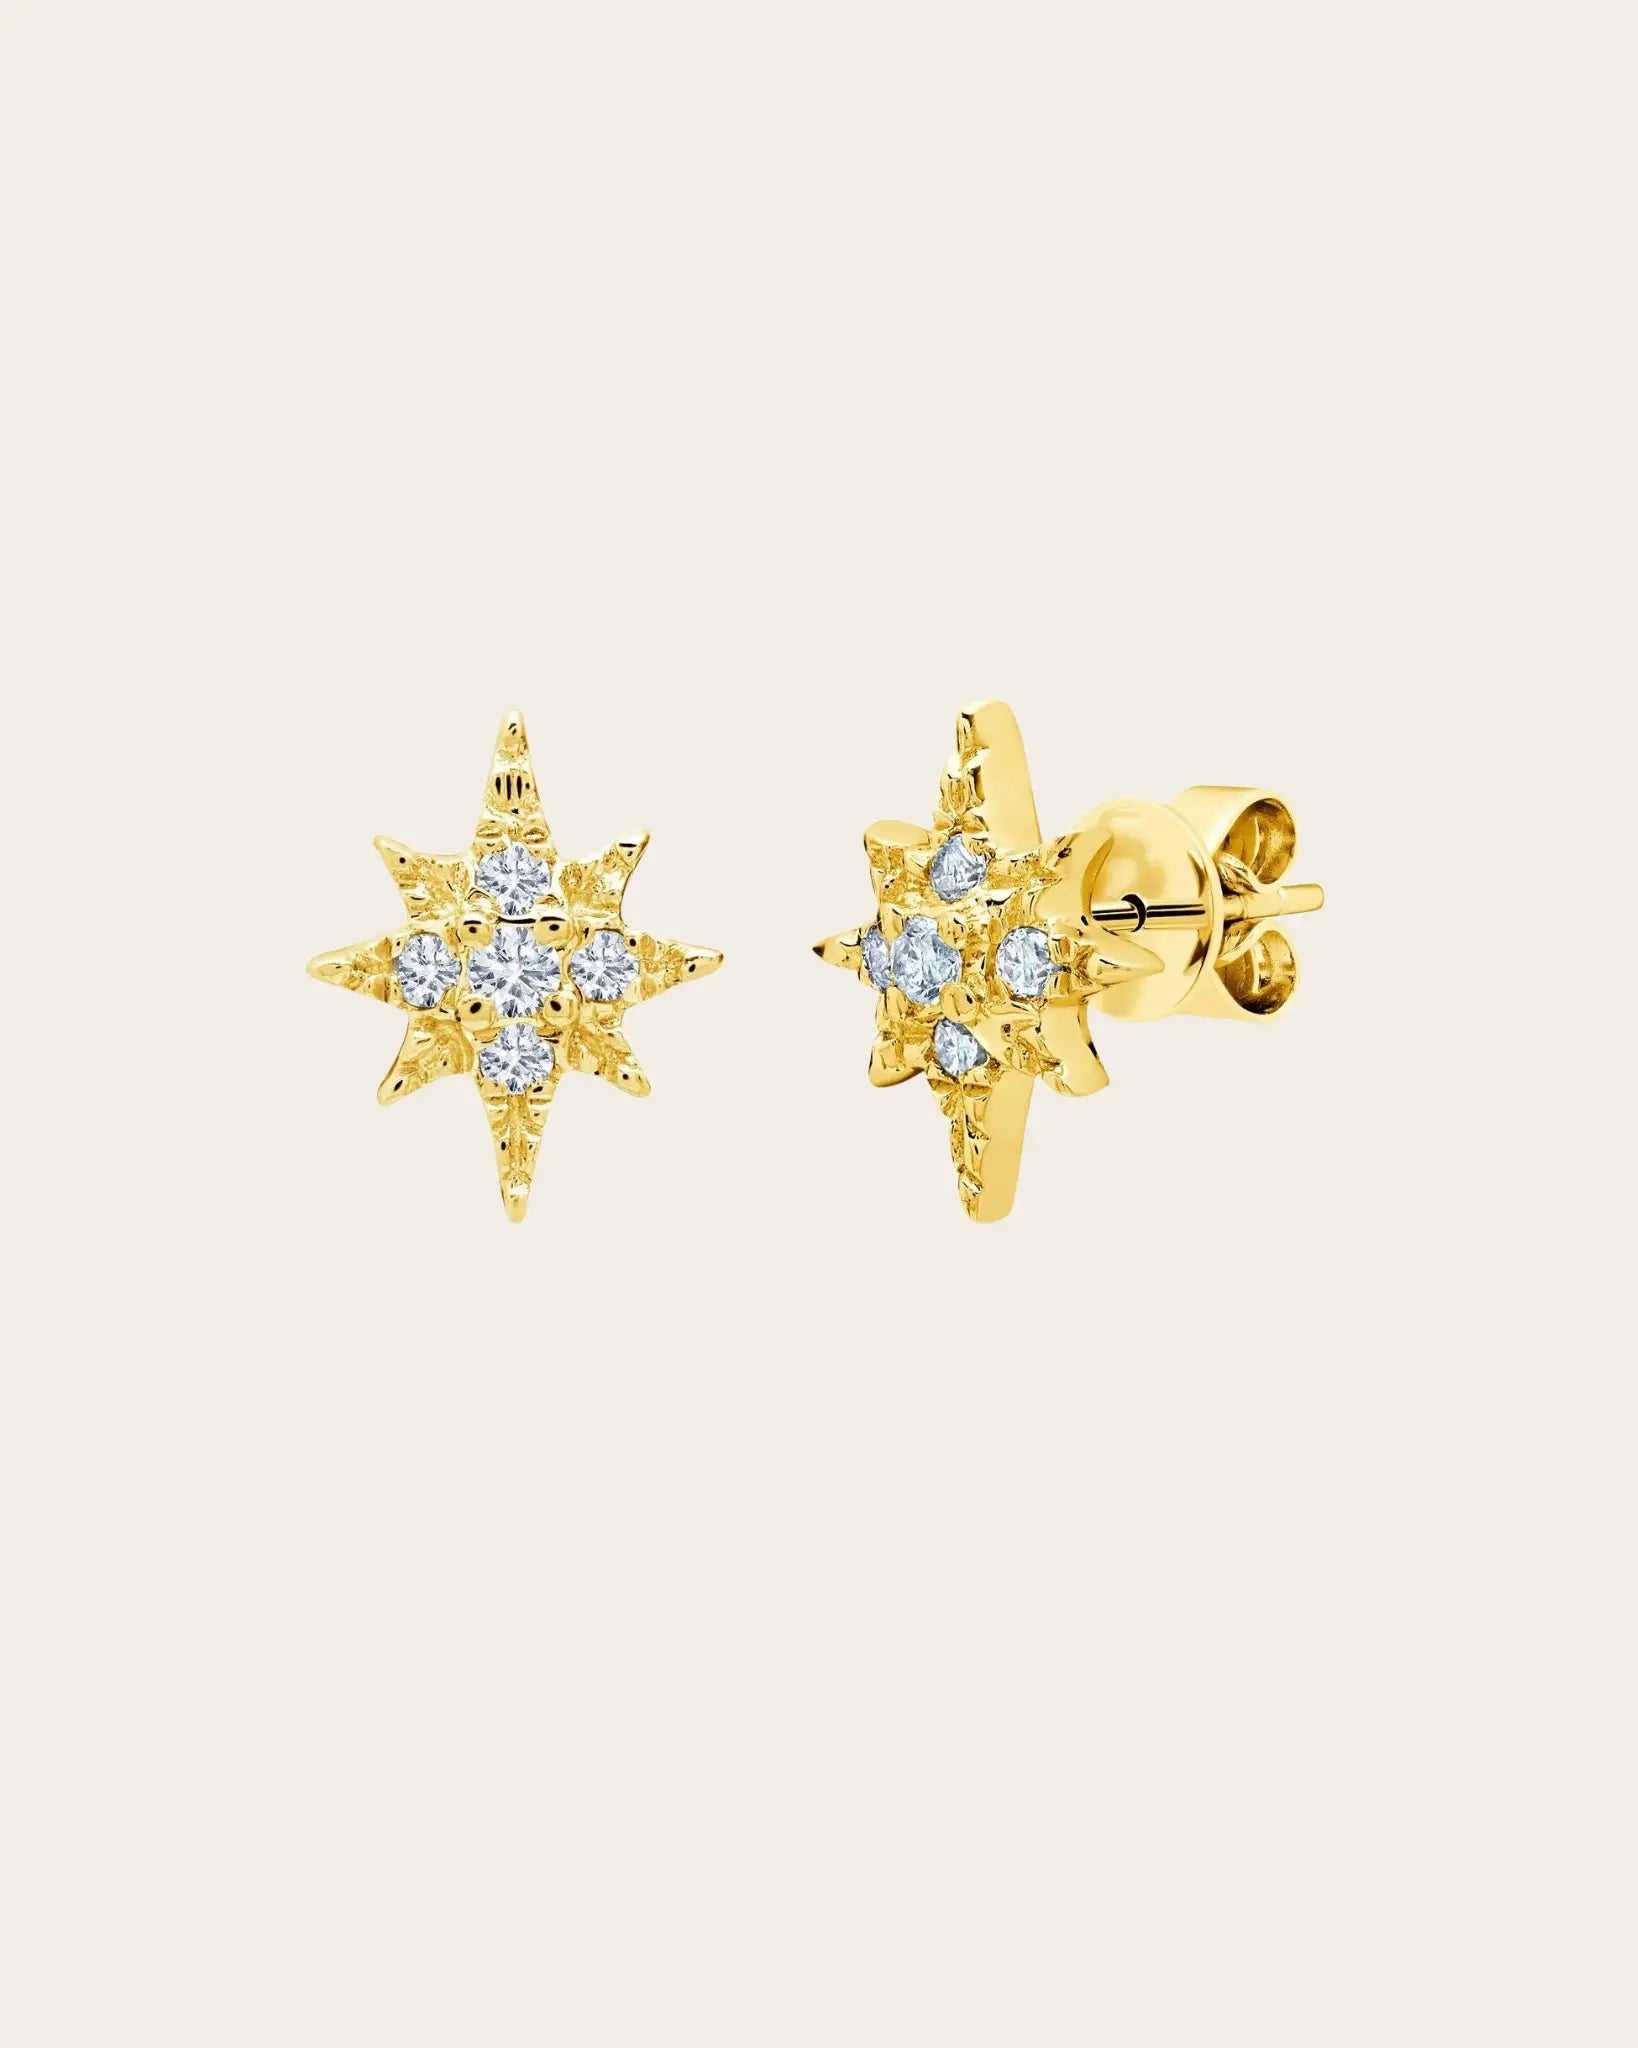 Tiny Yellow Starburst Earrings Tiny Yellow Starburst Earrings Graziela Gems Graziela Gems  Squash Blossom Vail